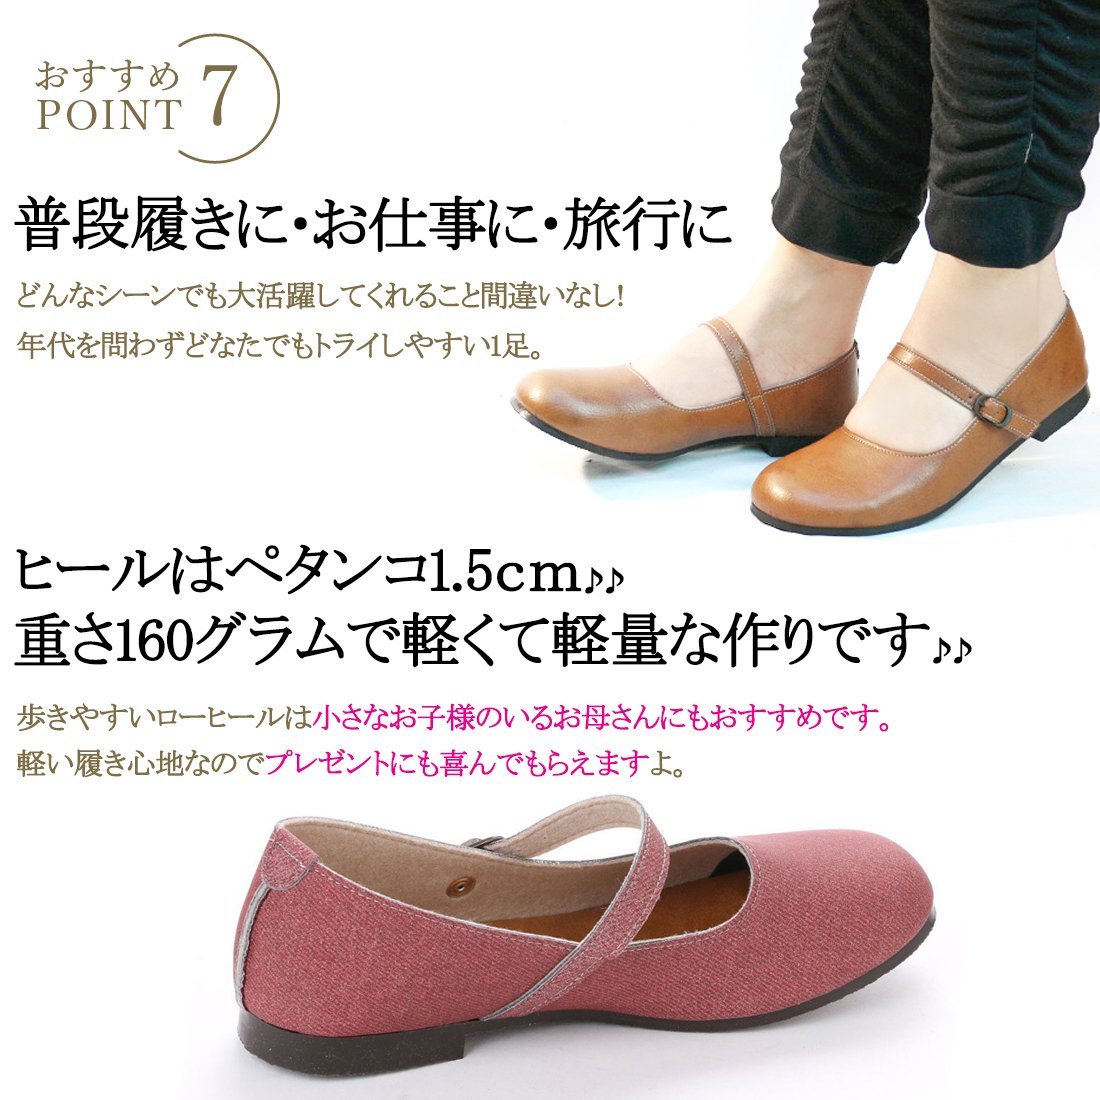 41lk бесплатная доставка по всей стране (25~25.5cm) сделано в Японии one ремешок туфли-лодочки / слоновая кость 